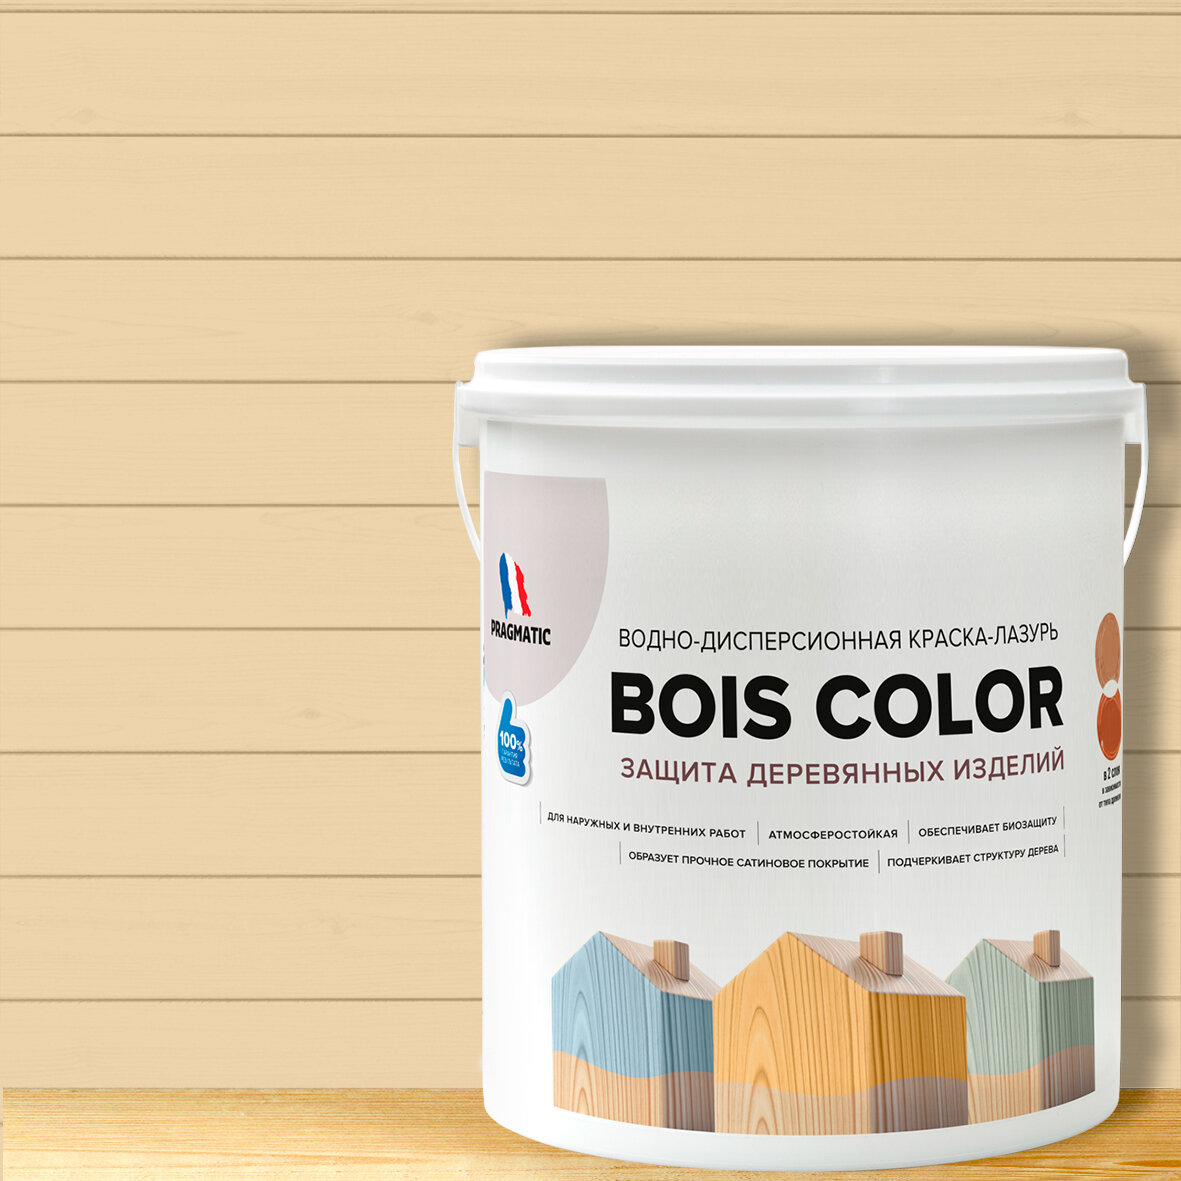 Краска (лазурь) для деревянных поверхностей и фасадов, обеспечивает биозащиту, защищает от плесени, грибков, атмосферостойкая, водоотталкивающая BOIS COLOR 0,9 л цвет Бежевый 8522